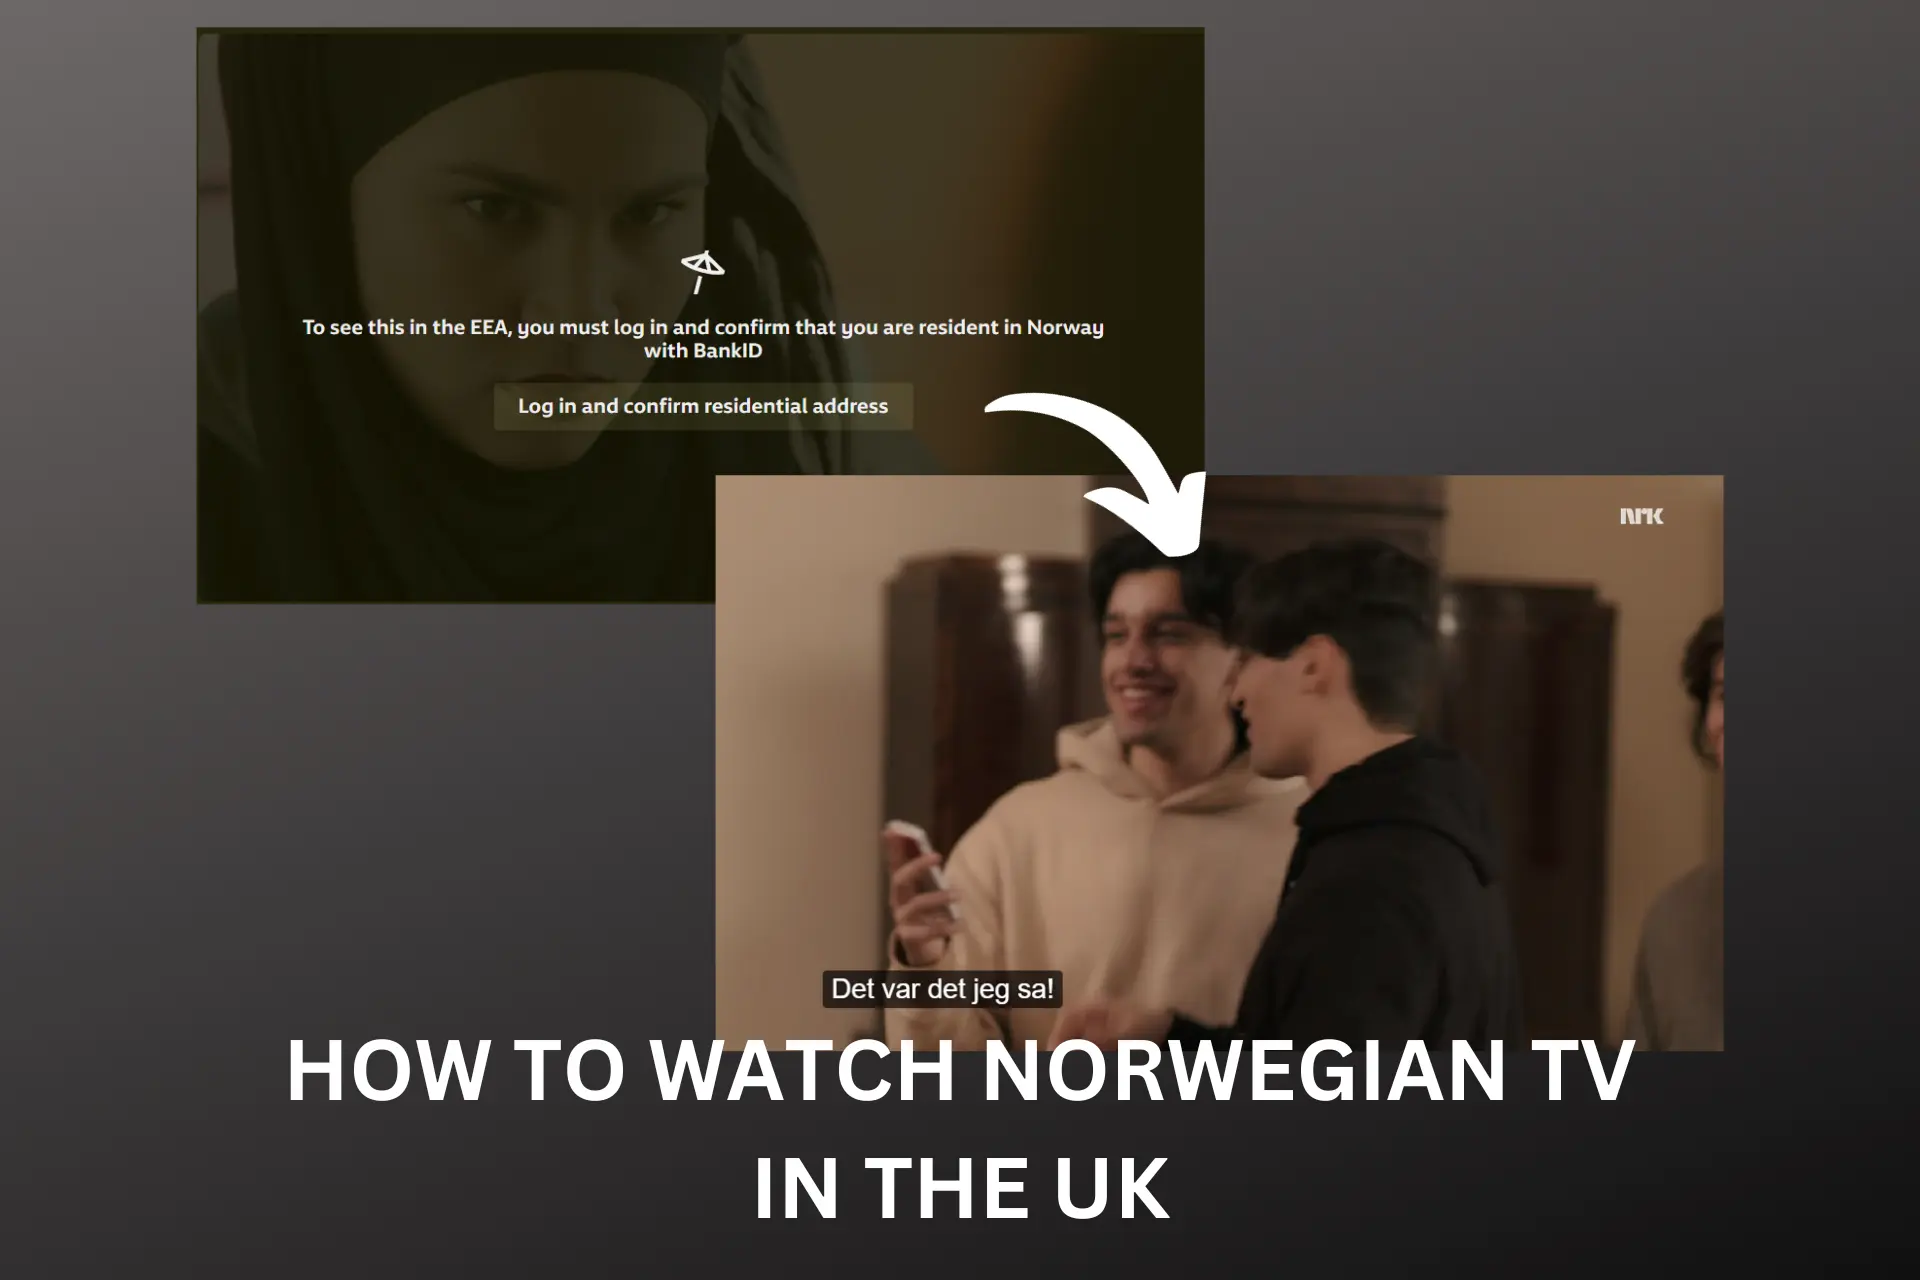 HOW TO WATCH NORWEGIAN TV IN THE UK